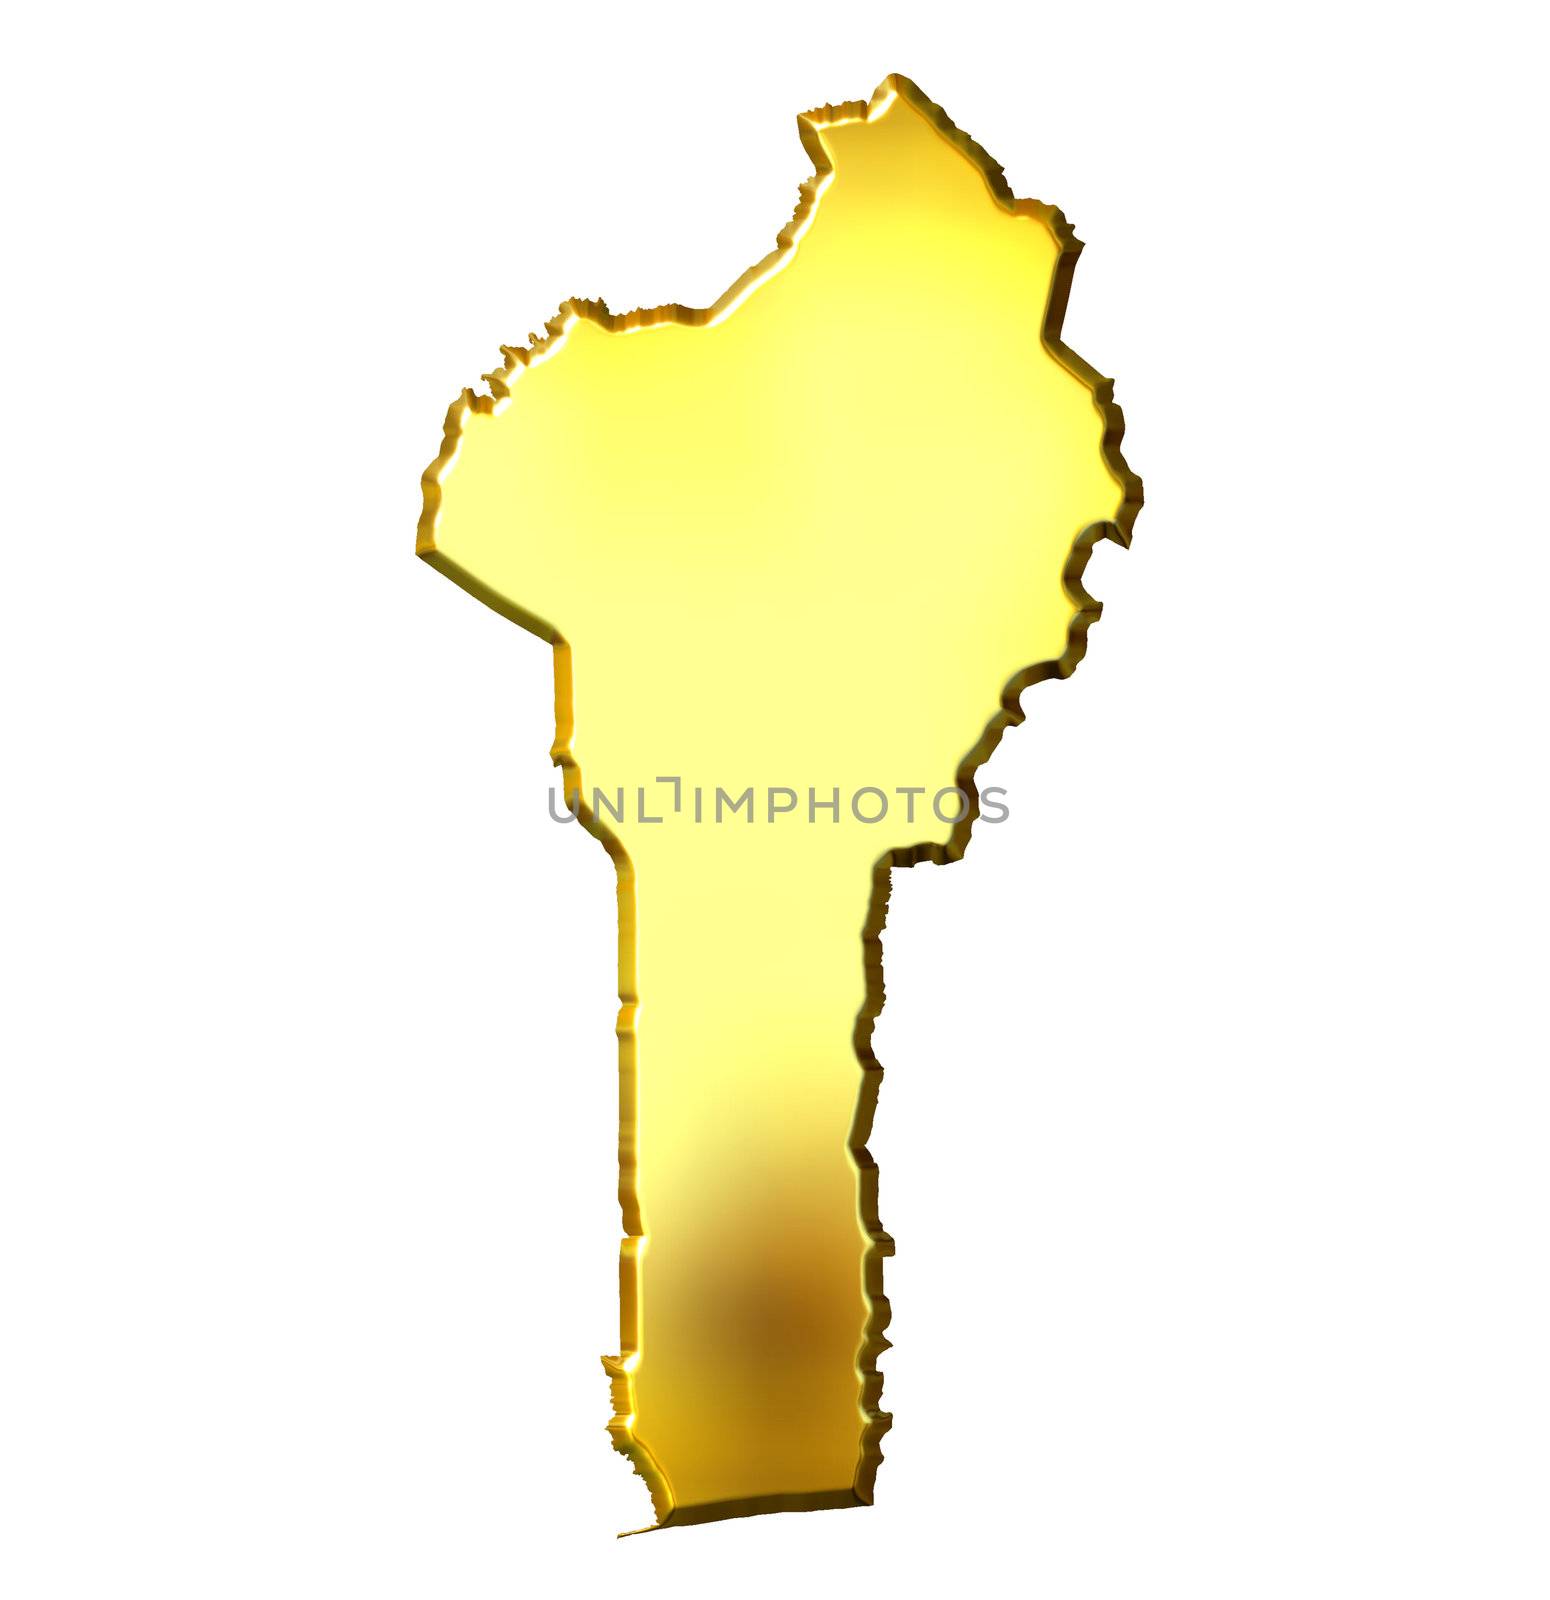 Benin 3d golden map isolated in white